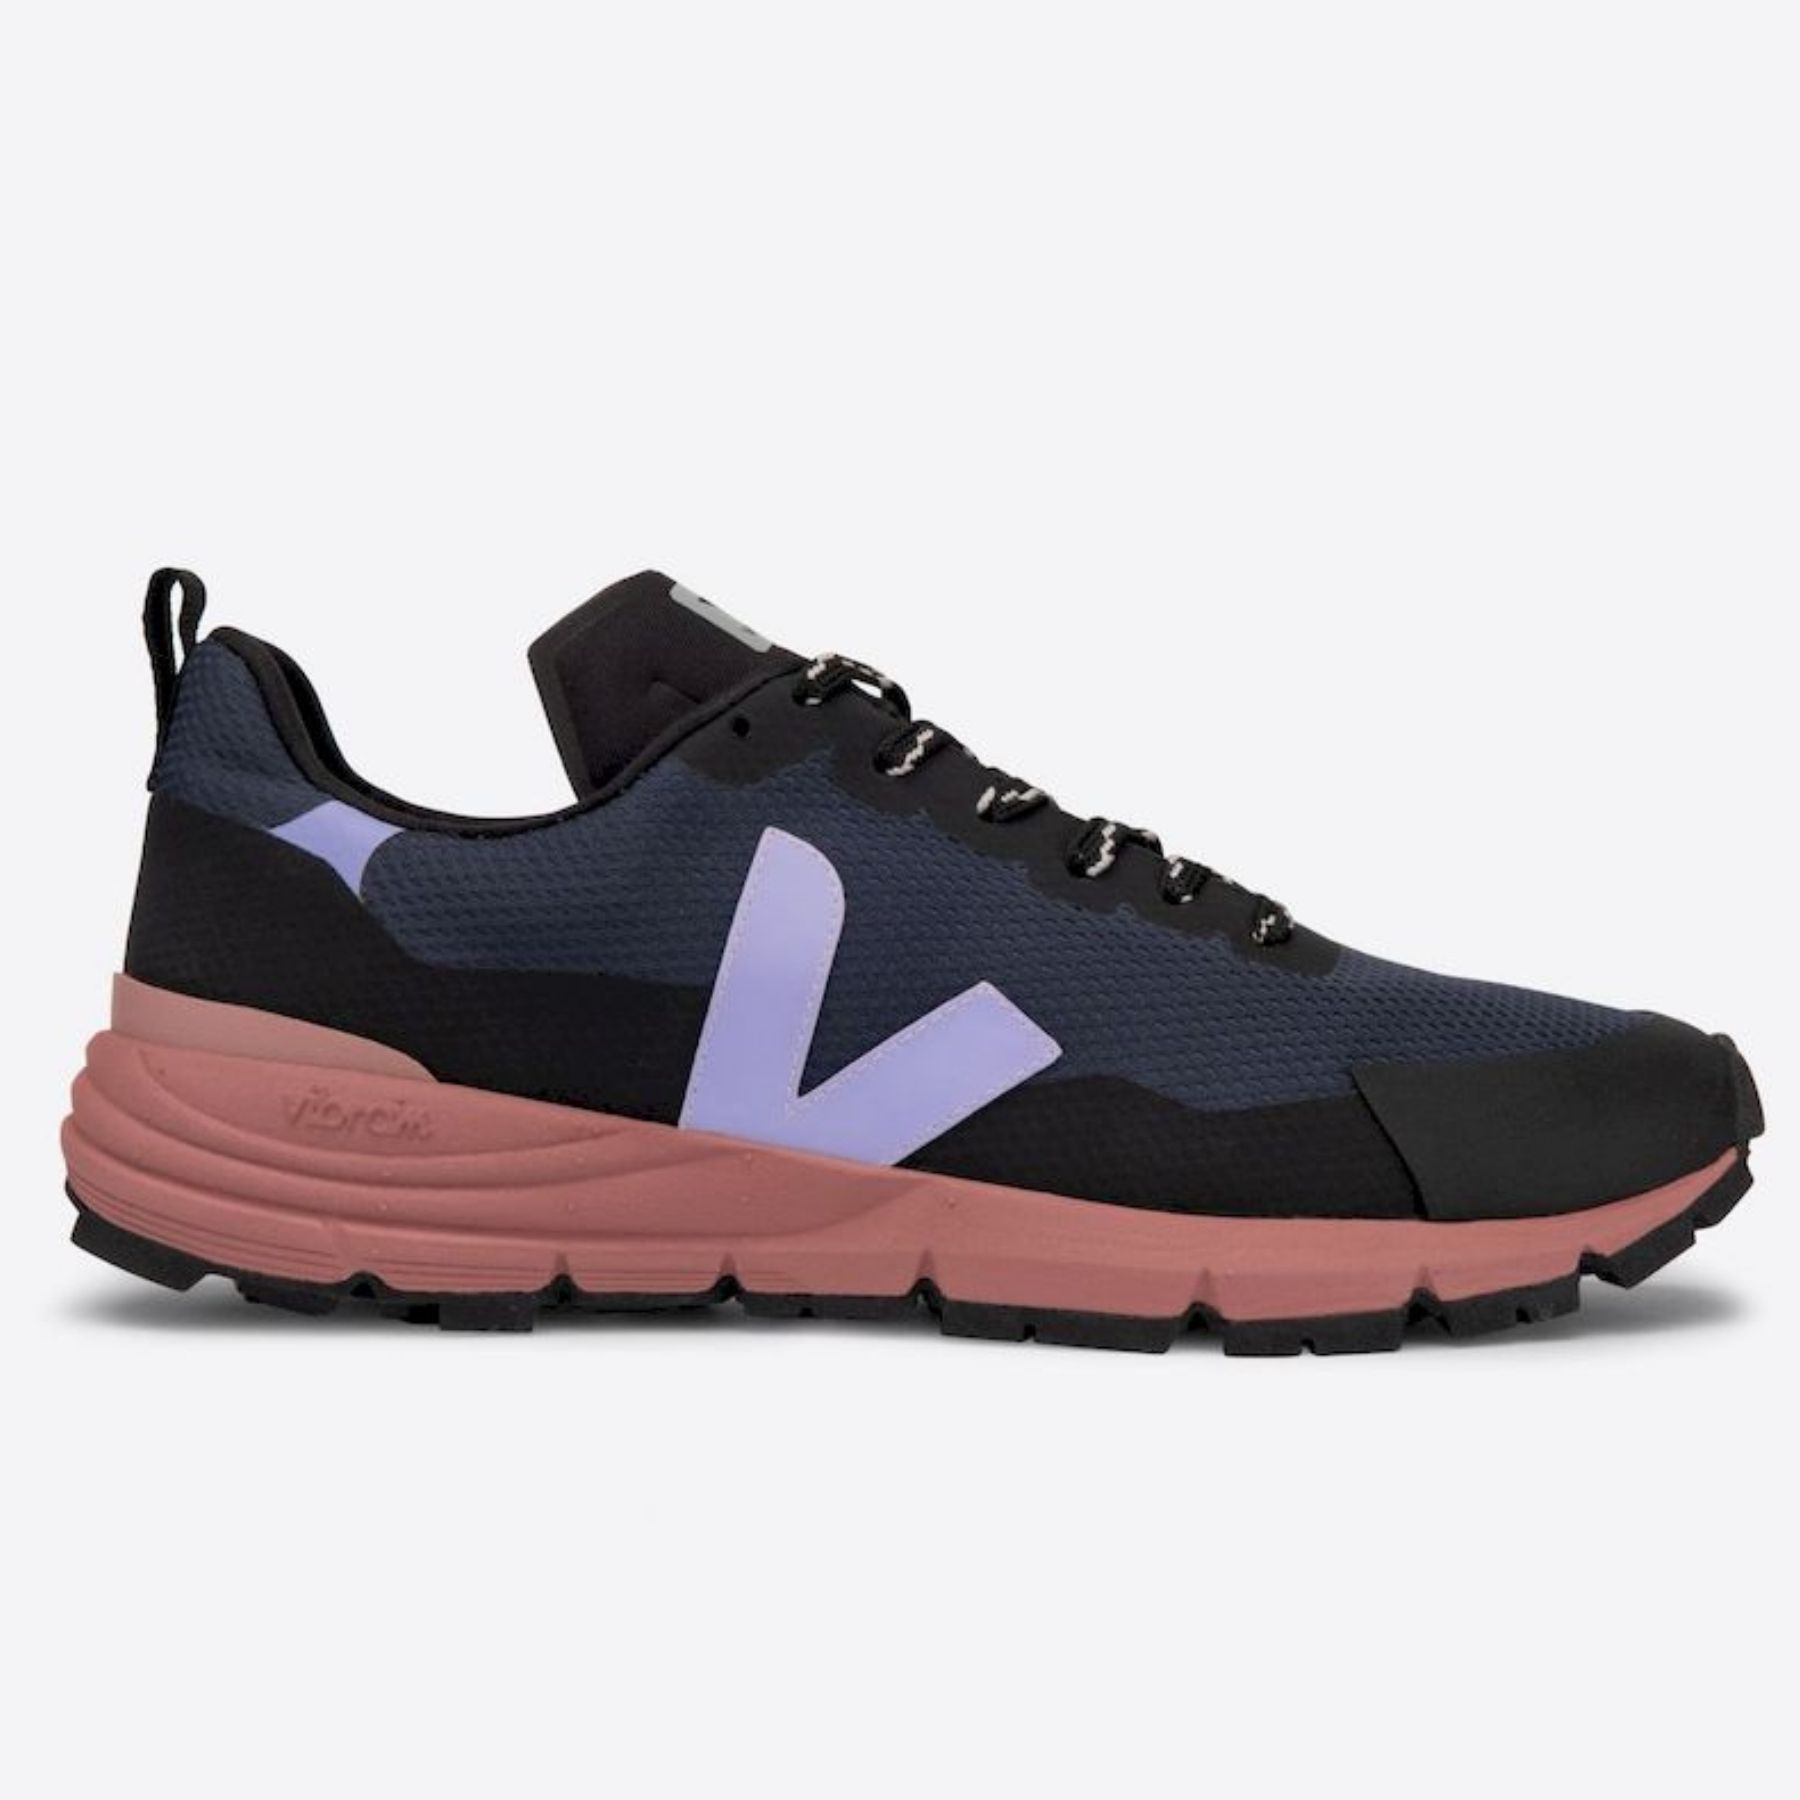 Veja Dekkan - Walking shoes - Women's